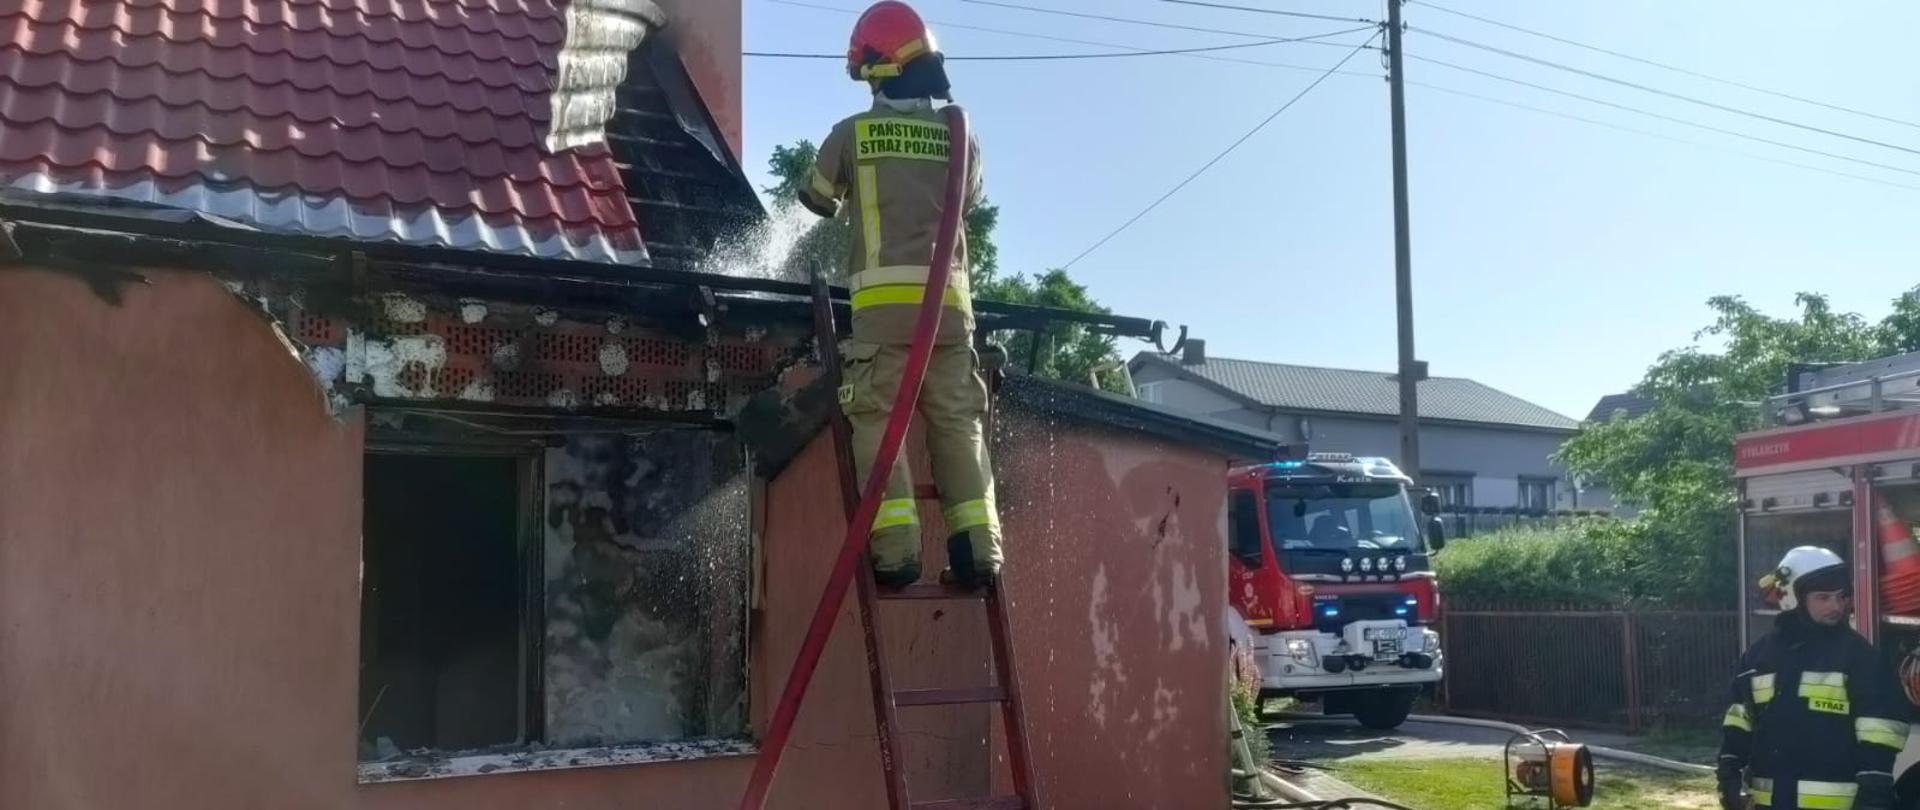 na drabinie stoi strażak z liną wężową z boku stoją inni strażacy oraz leż inny sprzęt strażacki na budynku widać poderwany kawałek blachy na dachu